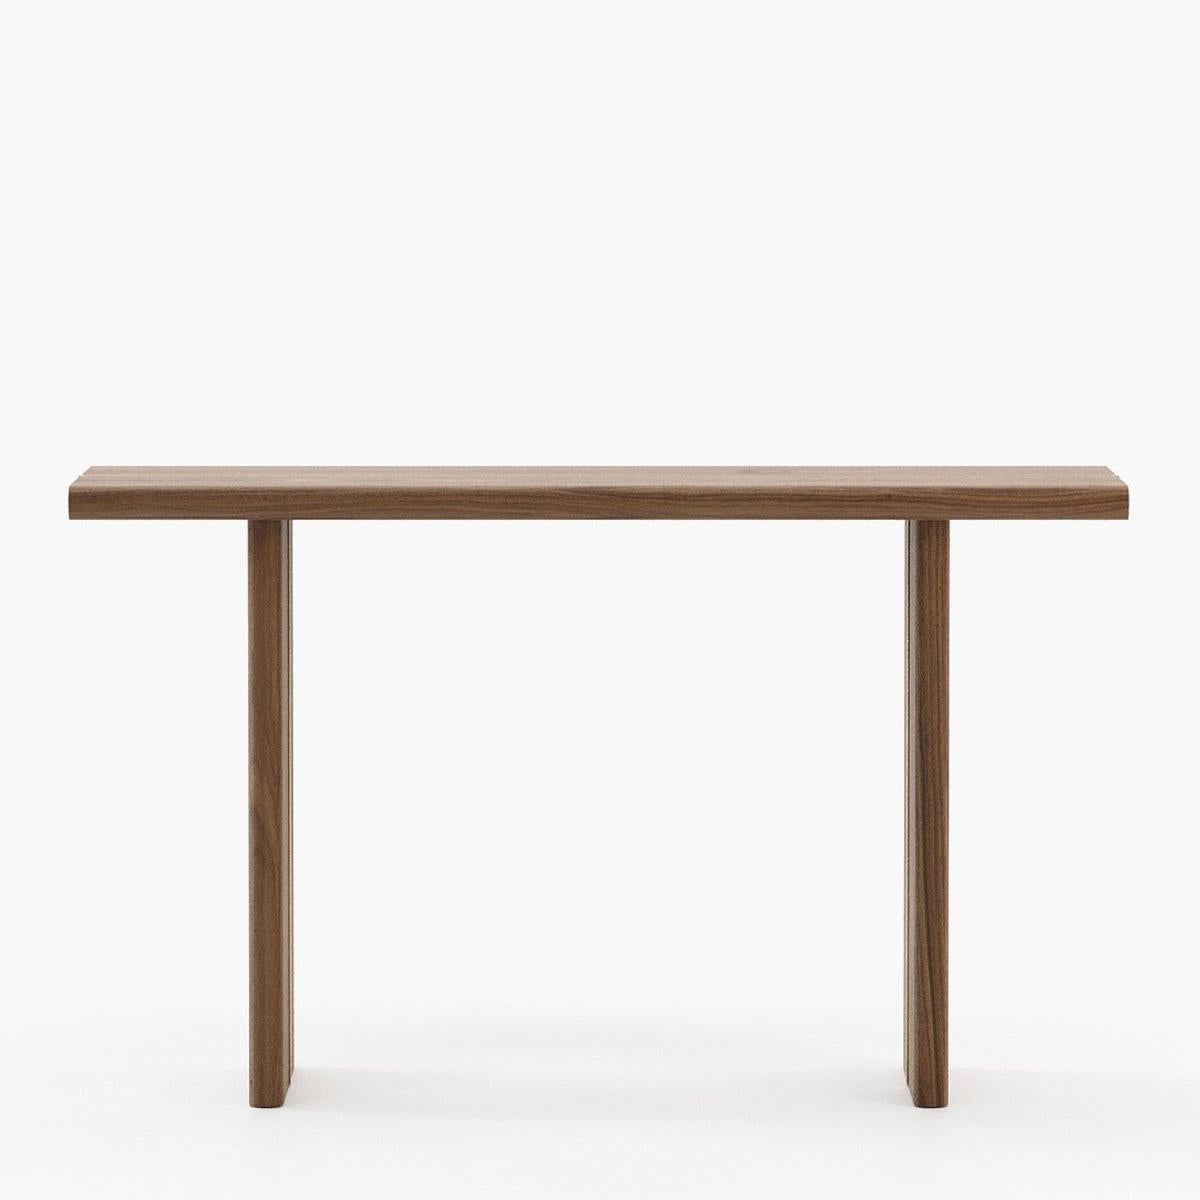 Table console Arkanta avec toute la structure en bois de noyer plaqué
avec garniture en acier inoxydable poli en finition dorée.
Également disponible sur demande en chêne gris mat, ou en chêne naturel, ou en chêne blanc.
finition matte ébène.